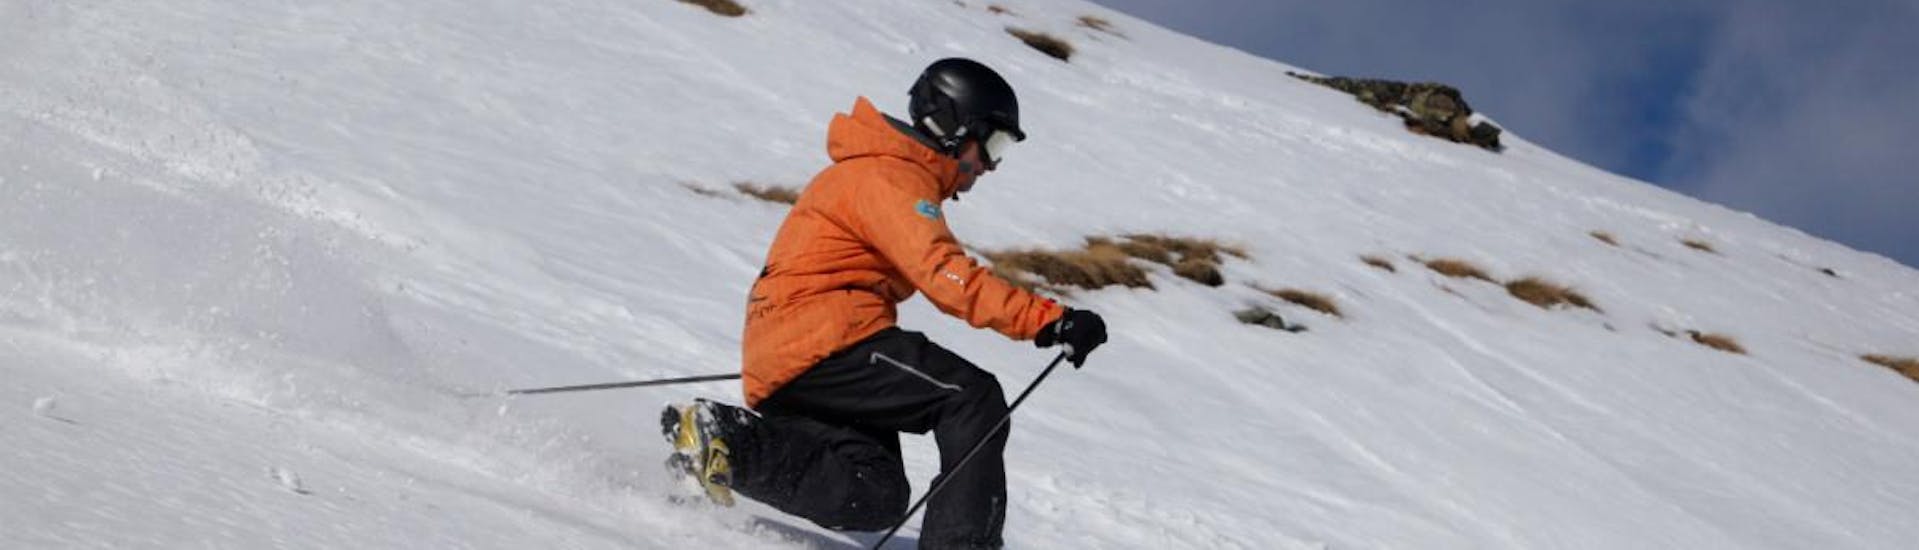 Un skieur montre ses compétences en télémark pendant les cours particuliers de télémark de la Ski School Zenit de Saas-Fee.